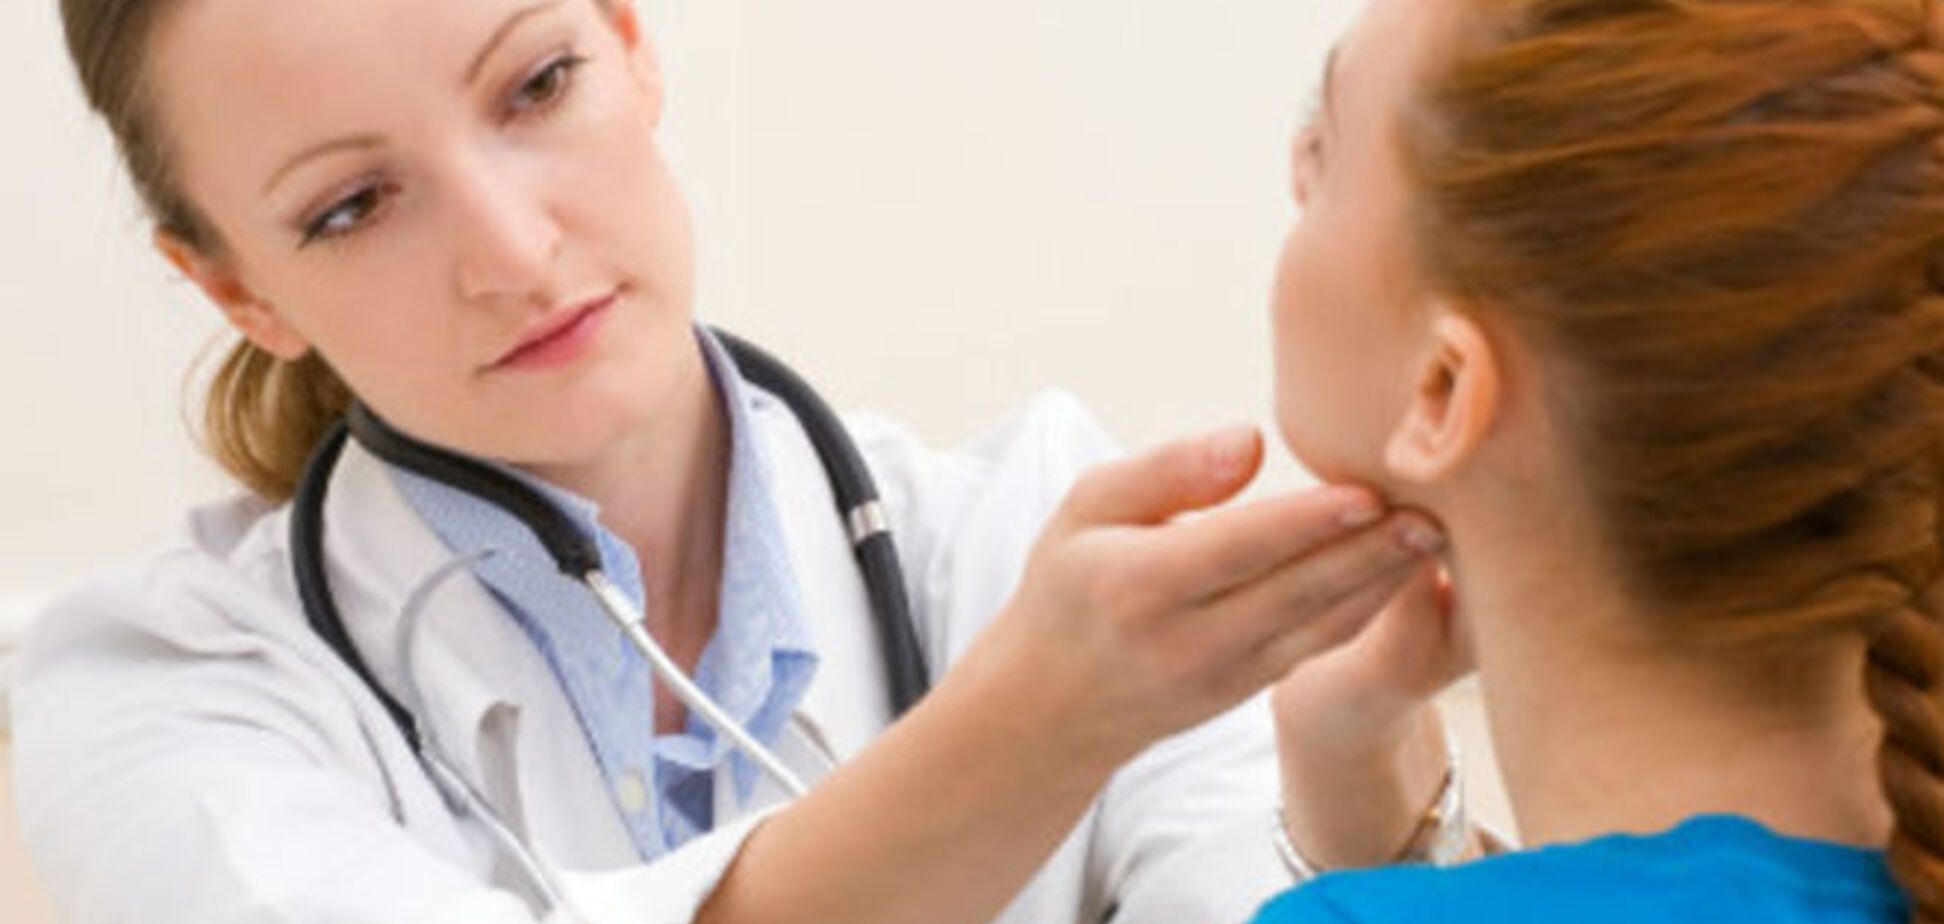 15 признаков проблем с щитовидкой